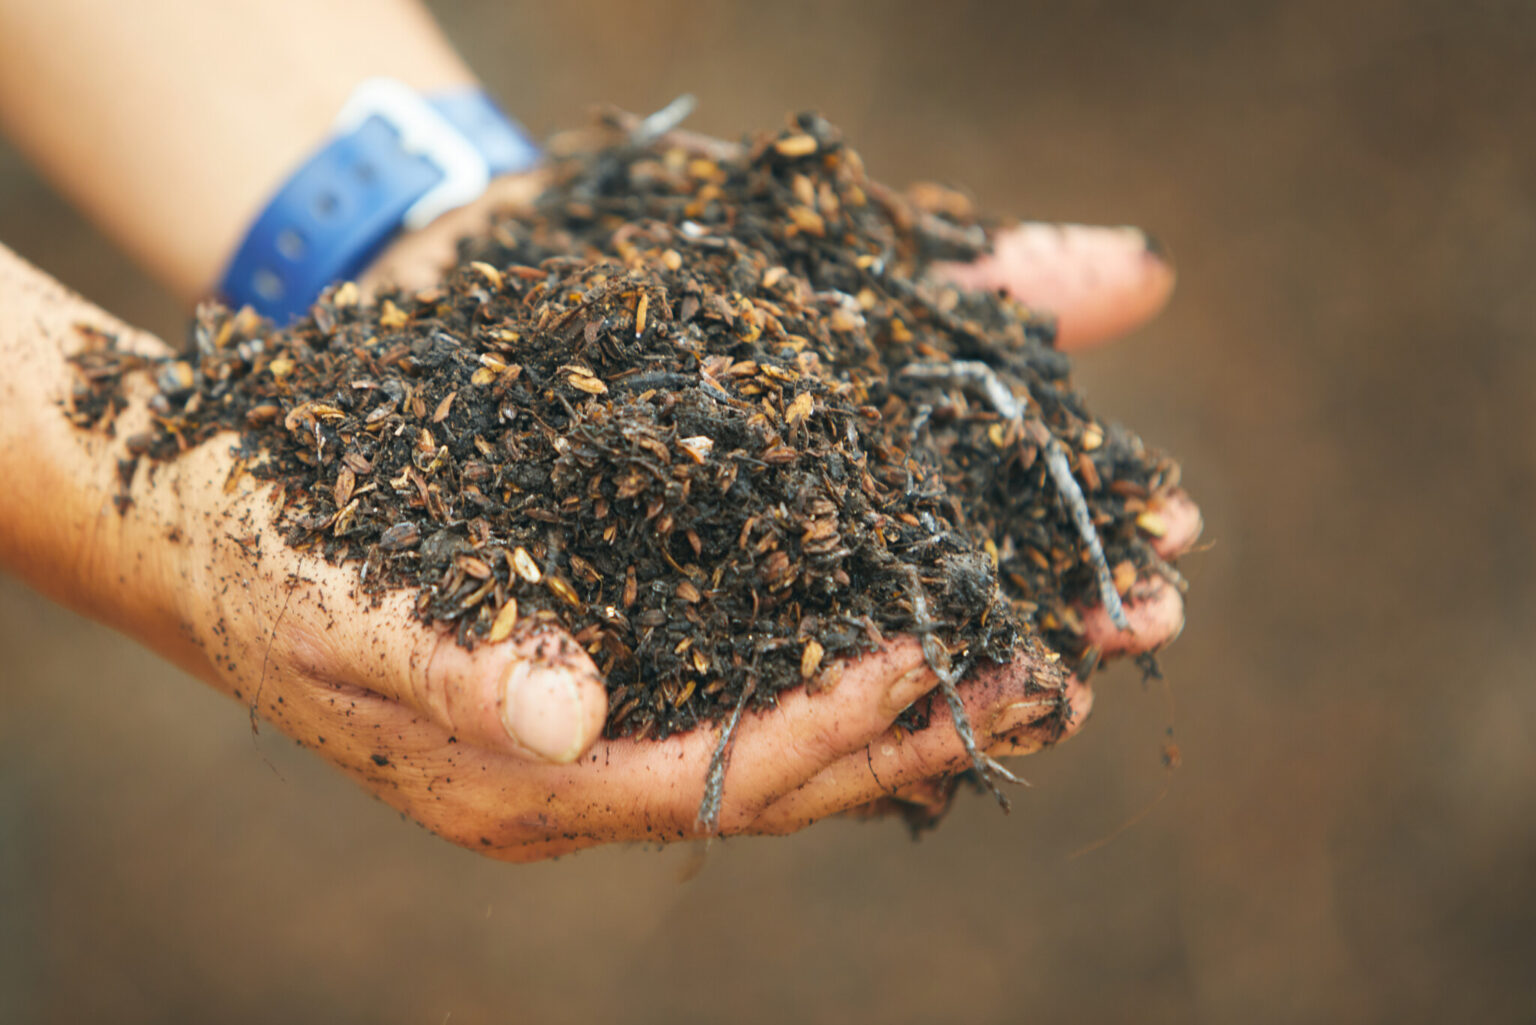 10年かけて土壌を改良。動物の排泄物を堆肥舎で発酵させて循環させることで農作物が健やかに育つ土壌に。